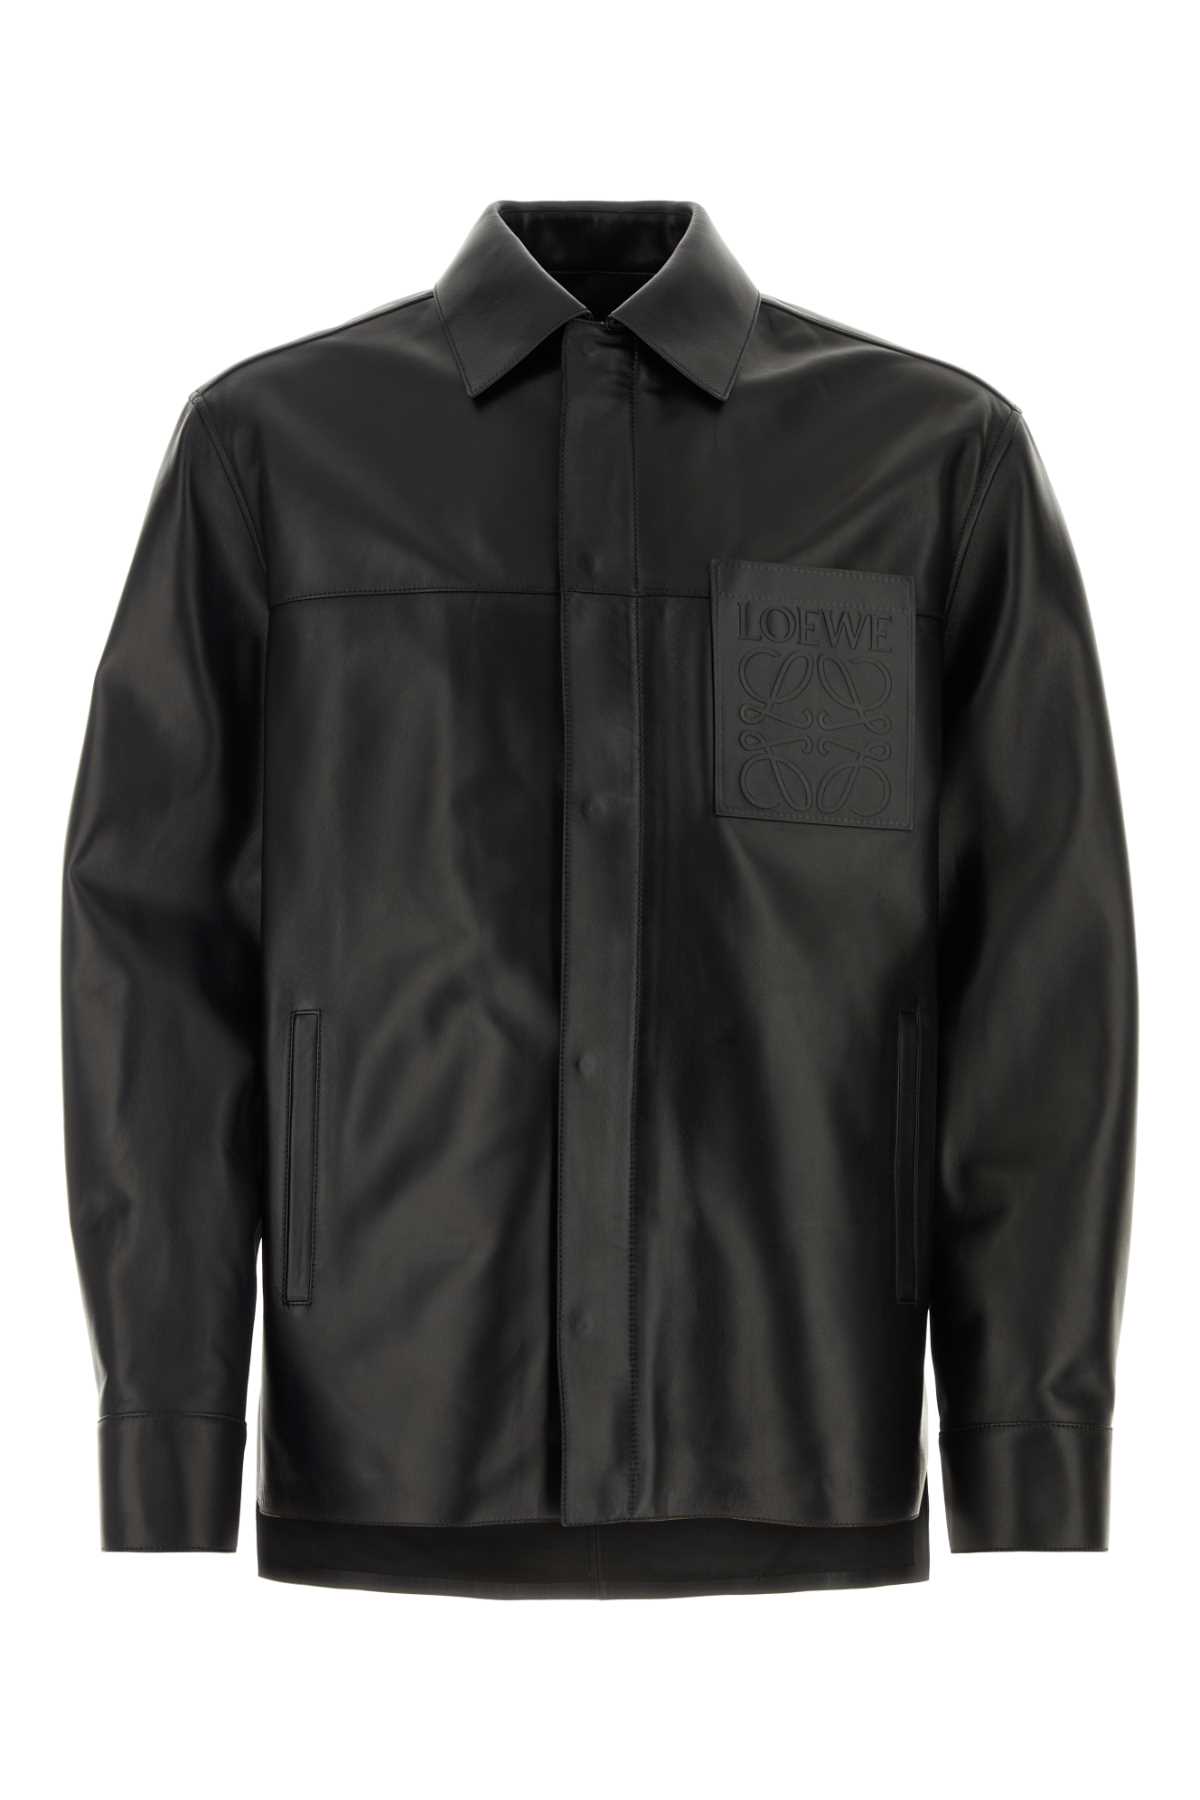 Loewe Black Leather Jacket